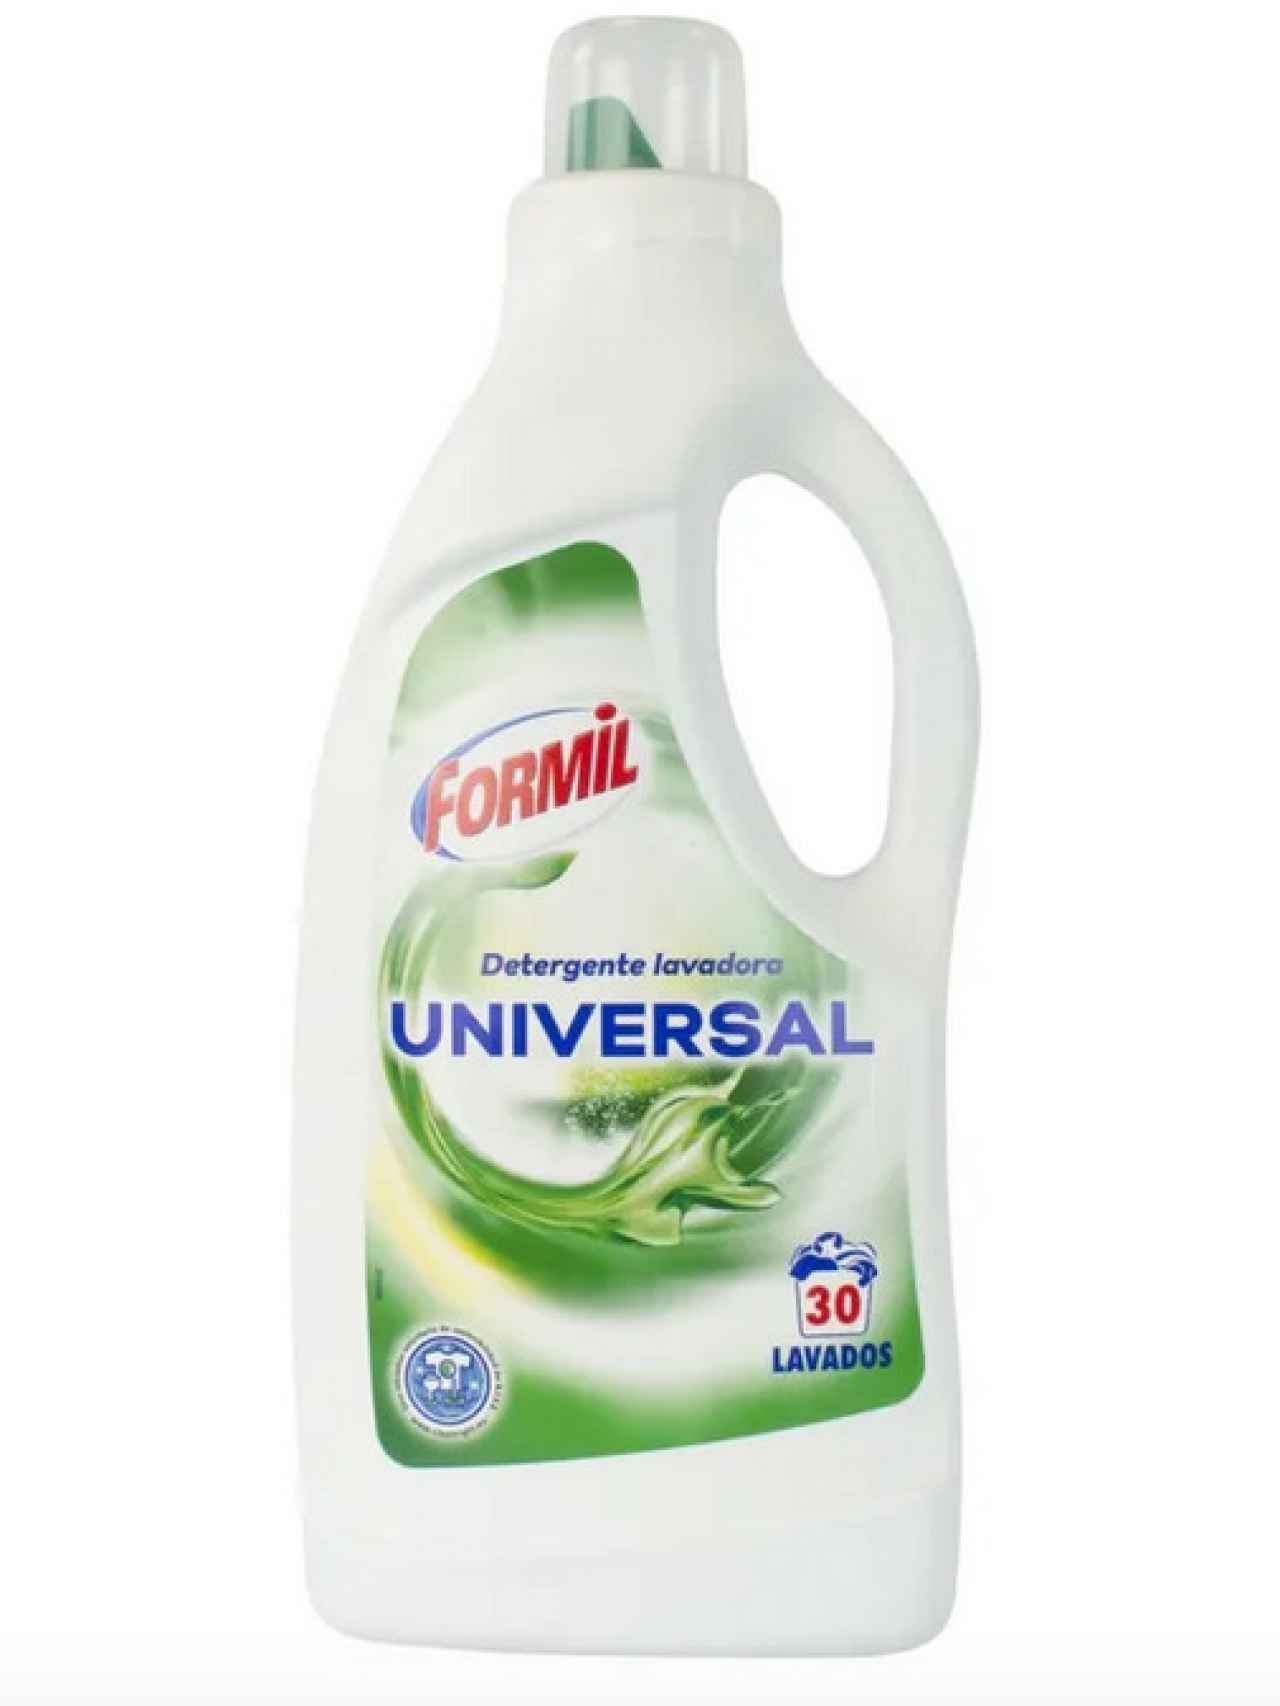 Detergente líquido universal 30 lavados de Formil, la marca blanca de Lidl.